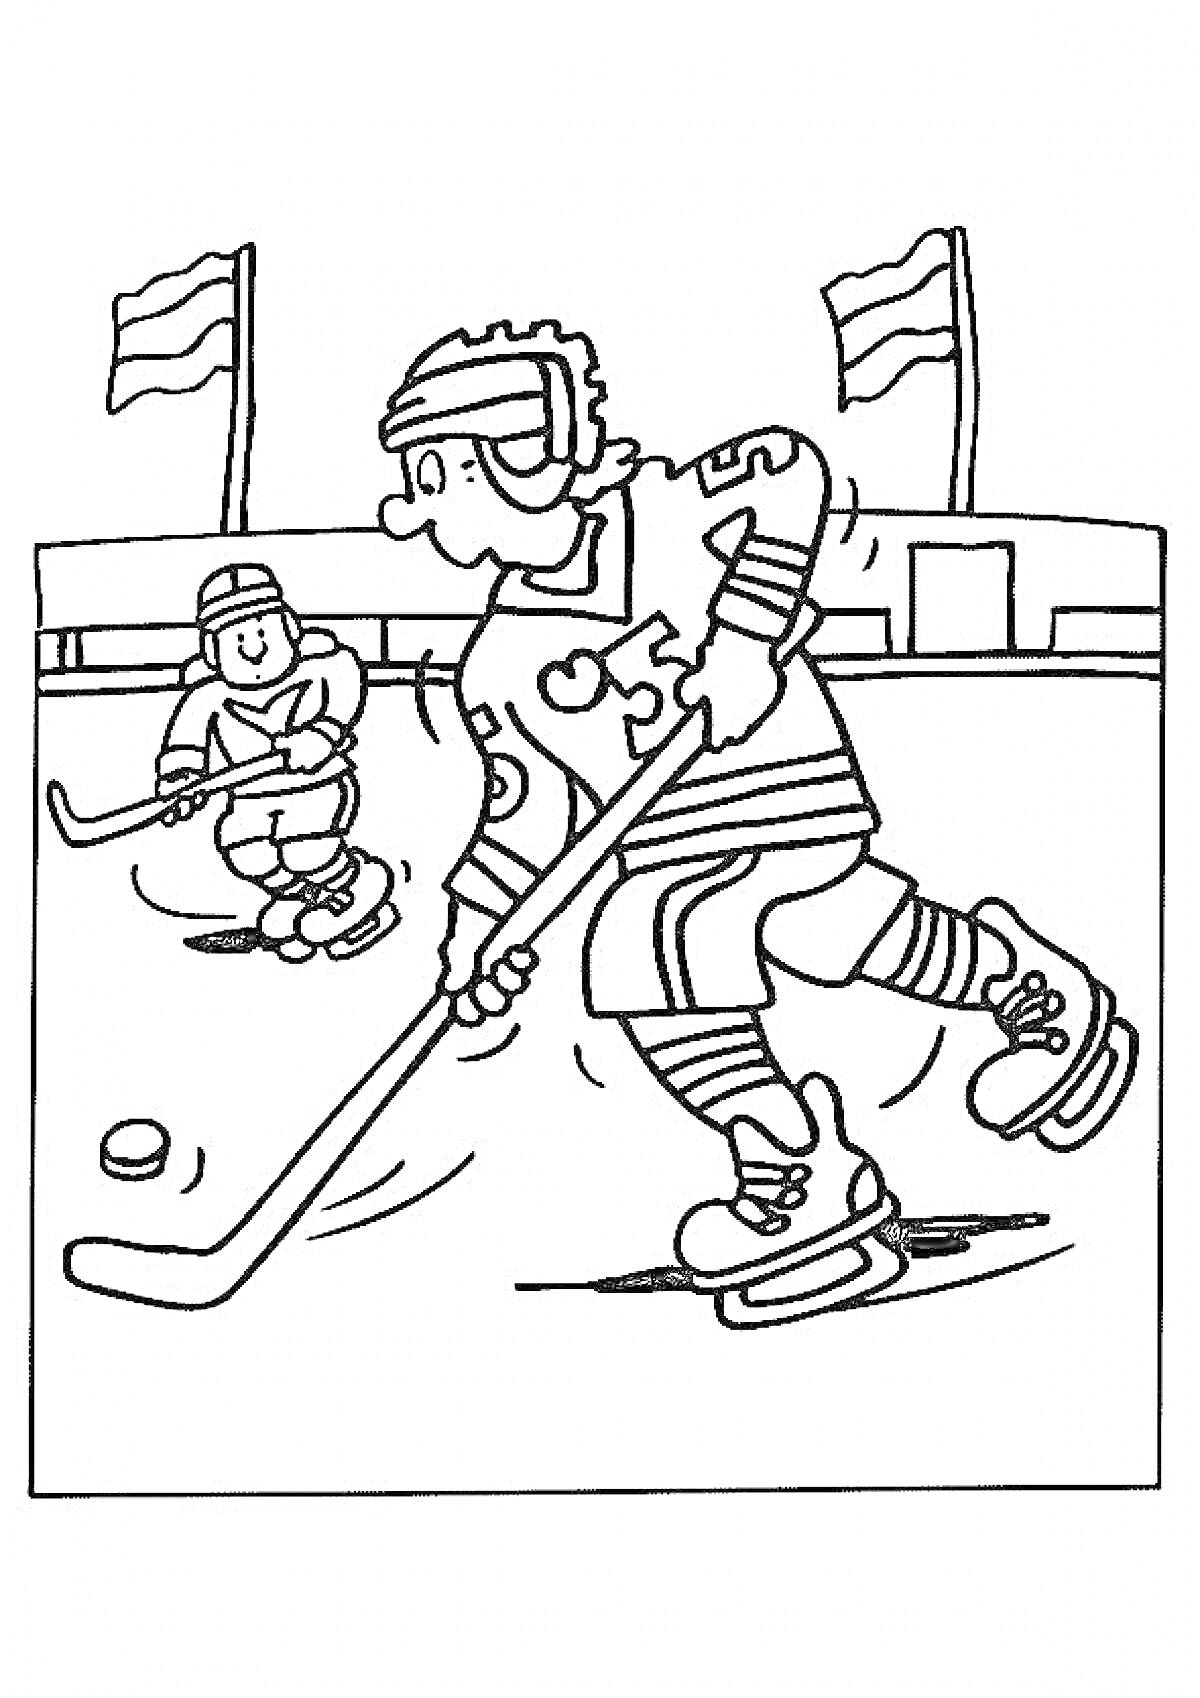 Хоккей на льду для двоих играющих с клюшками и шайбой на фоне флагов